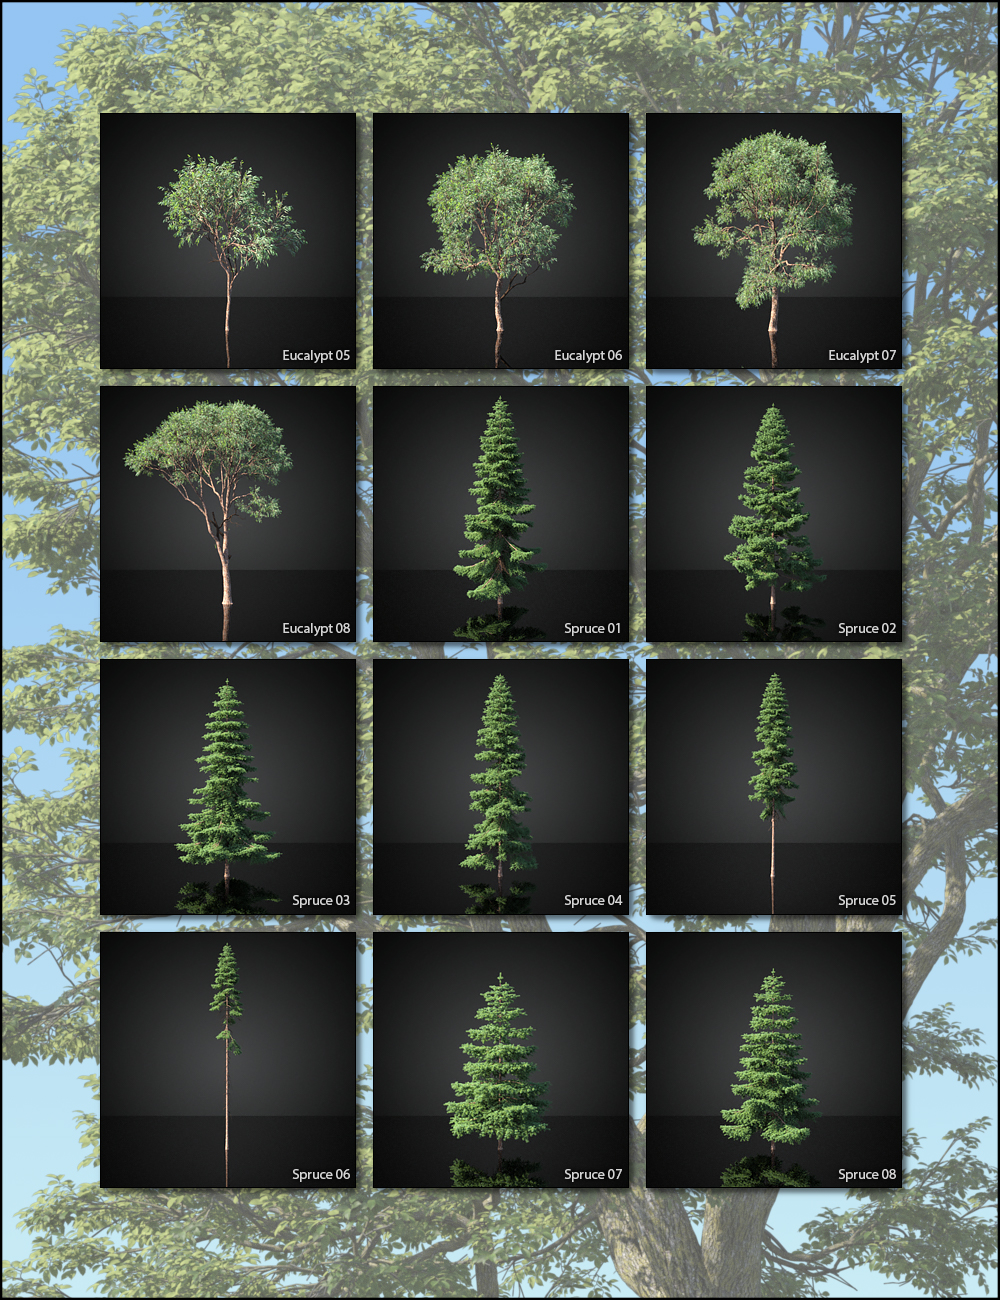 UltraTrees - Realistic Tree System by: HowieFarkes, 3D Models by Daz 3D